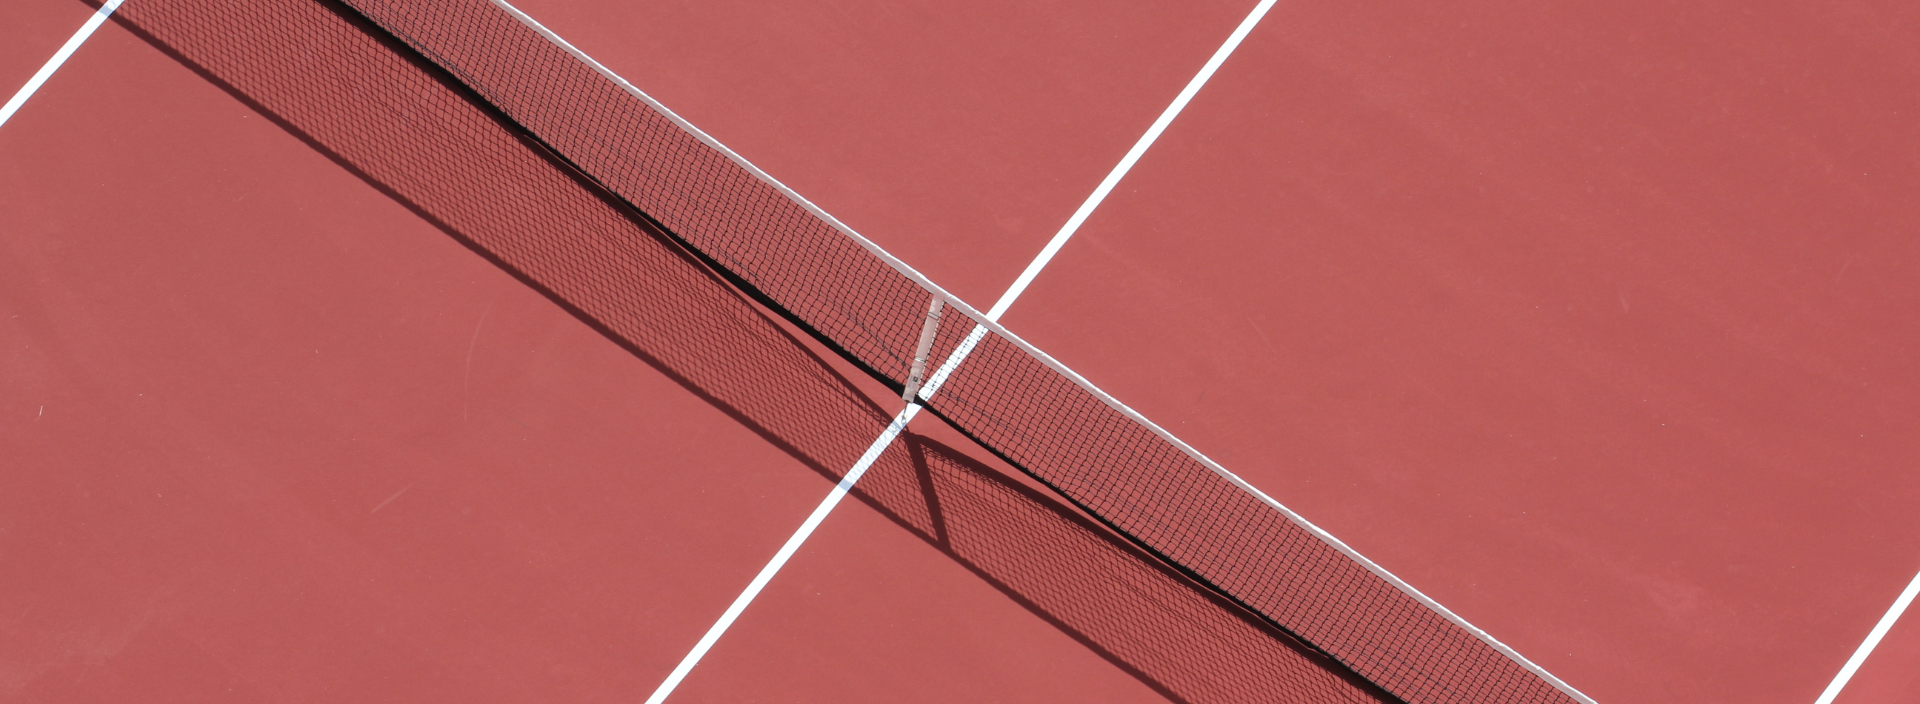 terrain de tennis en résine synthétique court de tennis